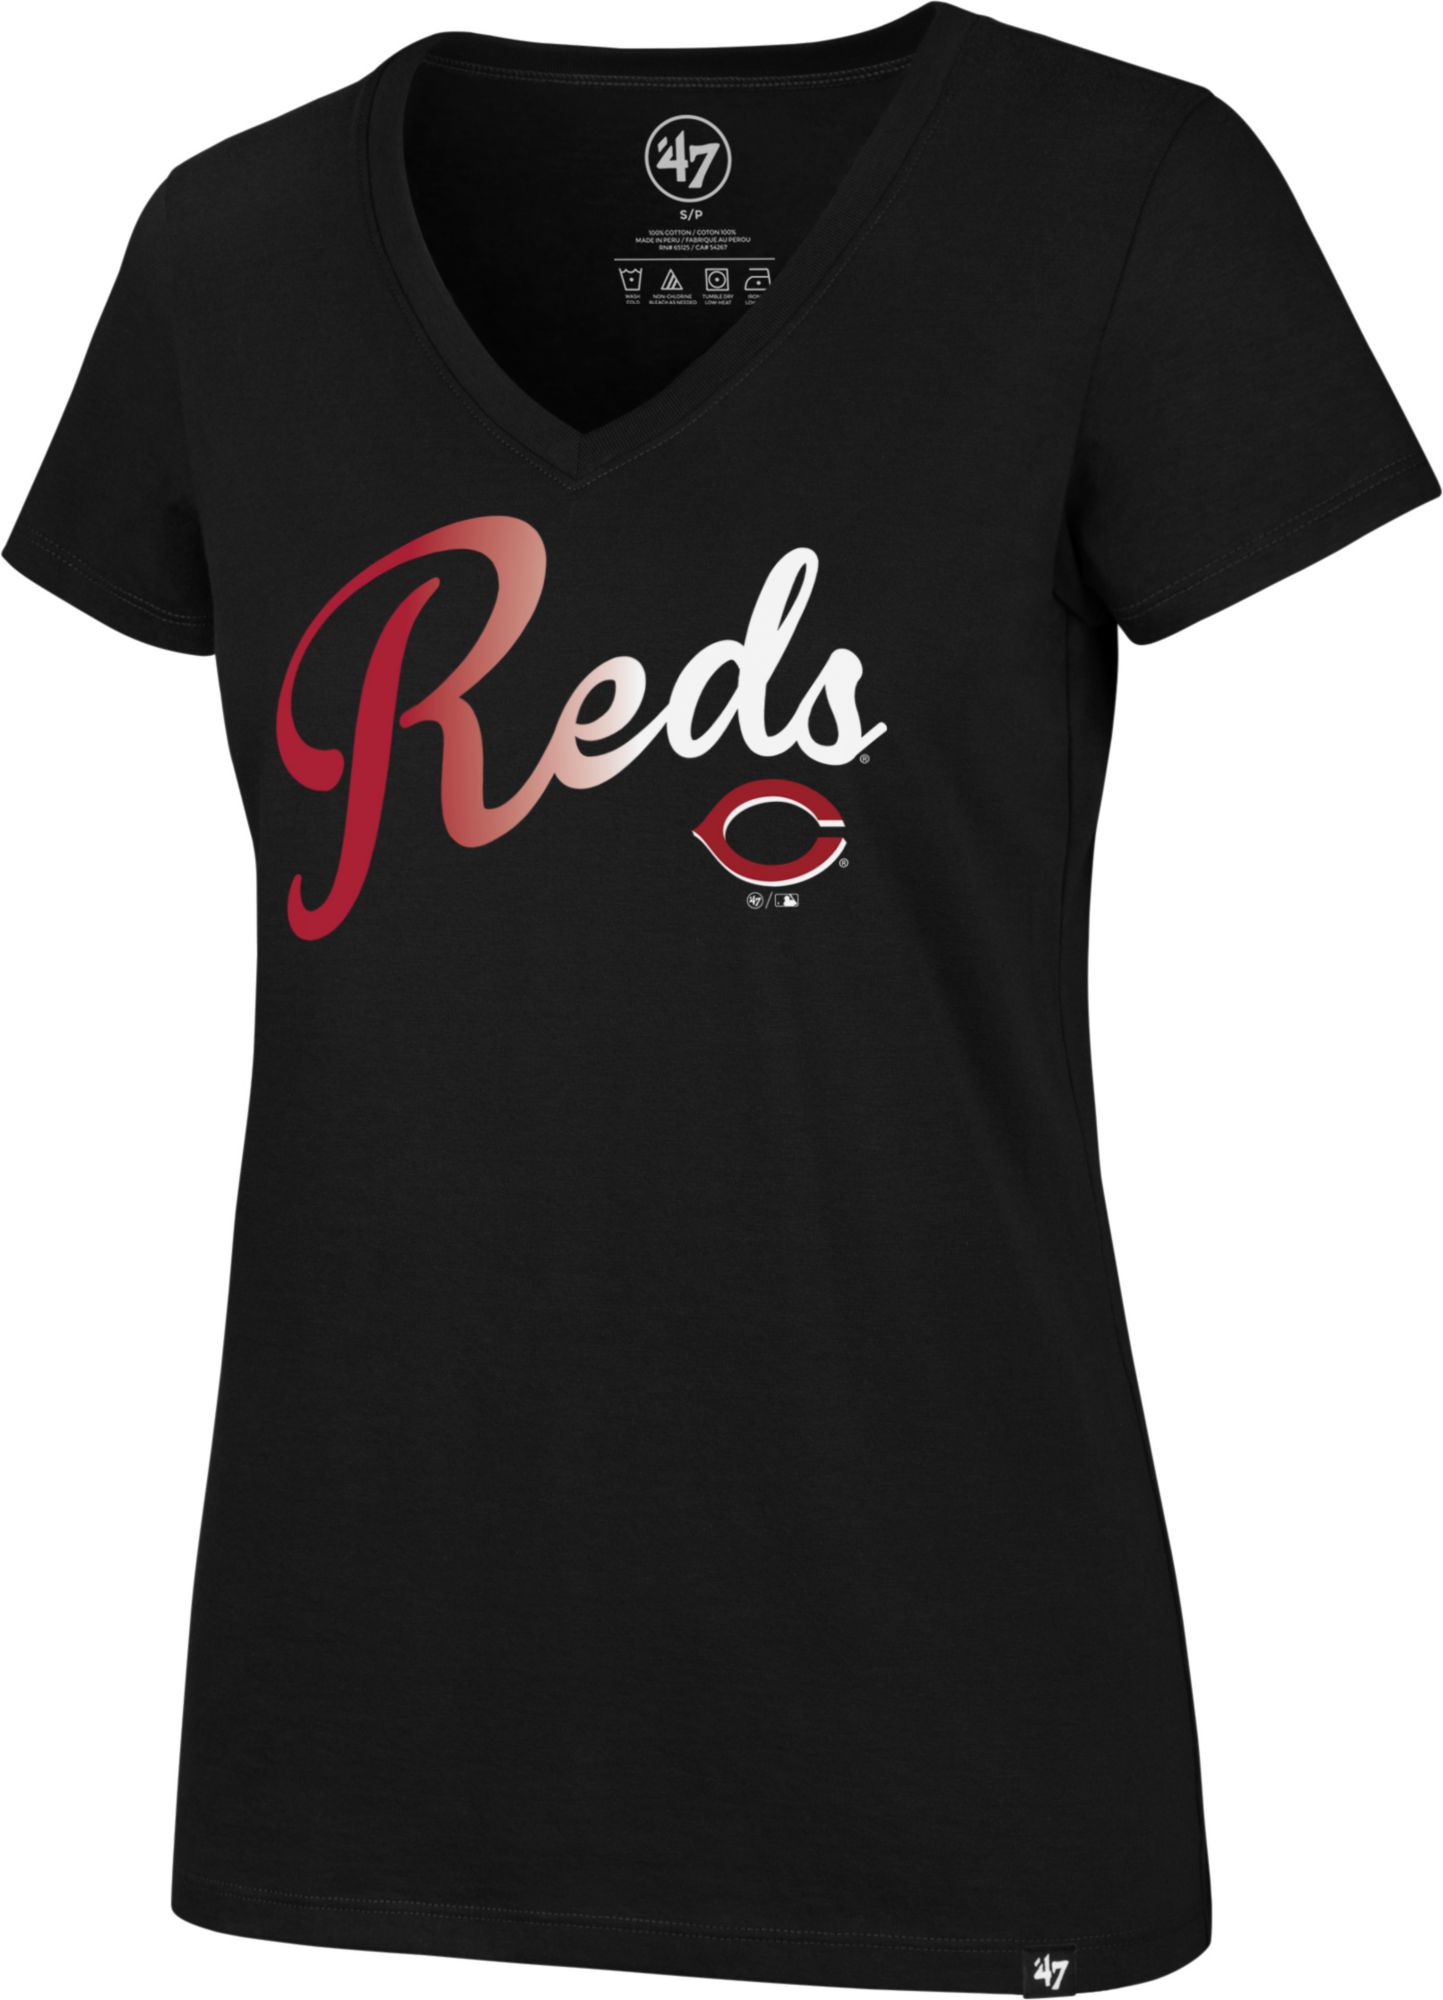 cincinnati reds women's apparel